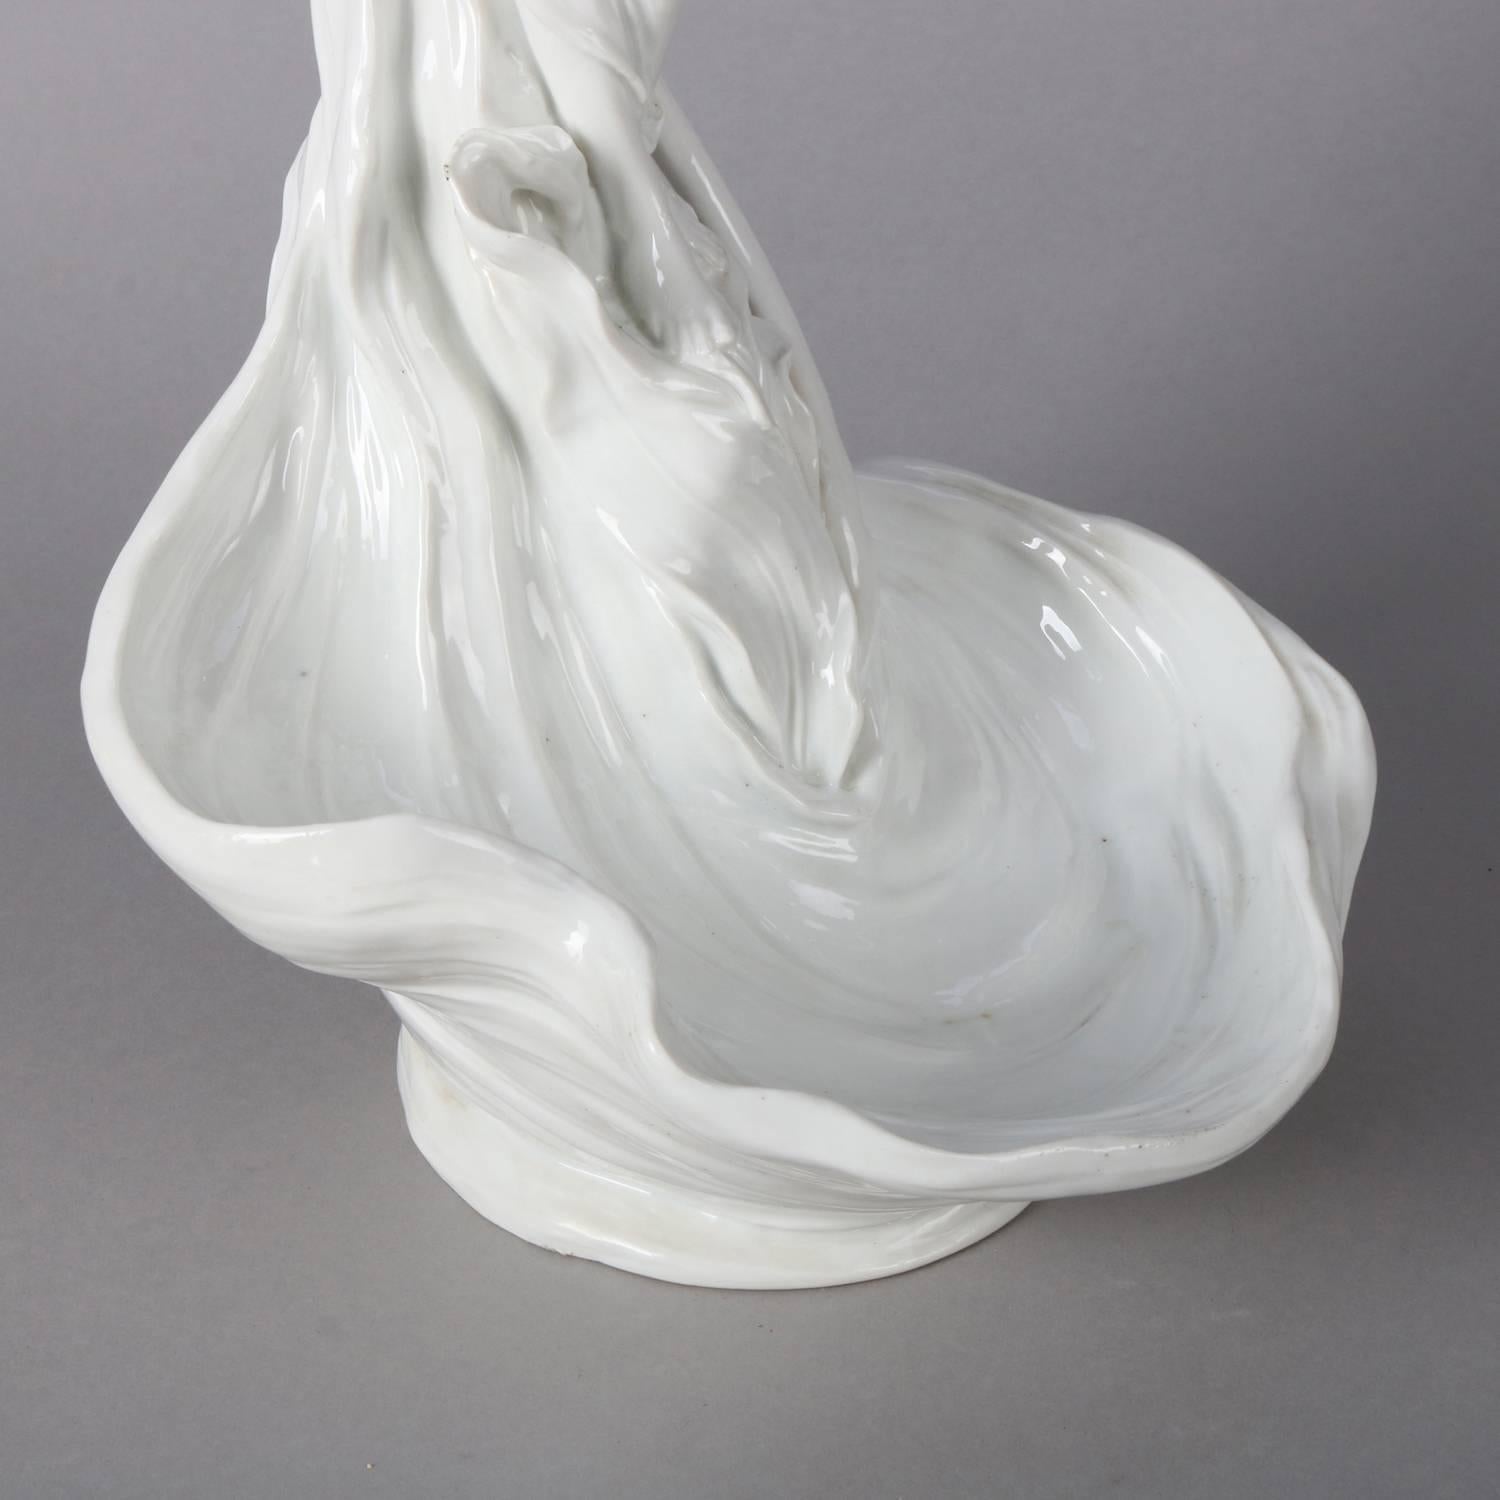 Art Nouveau Style Figural Blanc-de-Chine Porcelain Display Bowl, Partial Nude 4